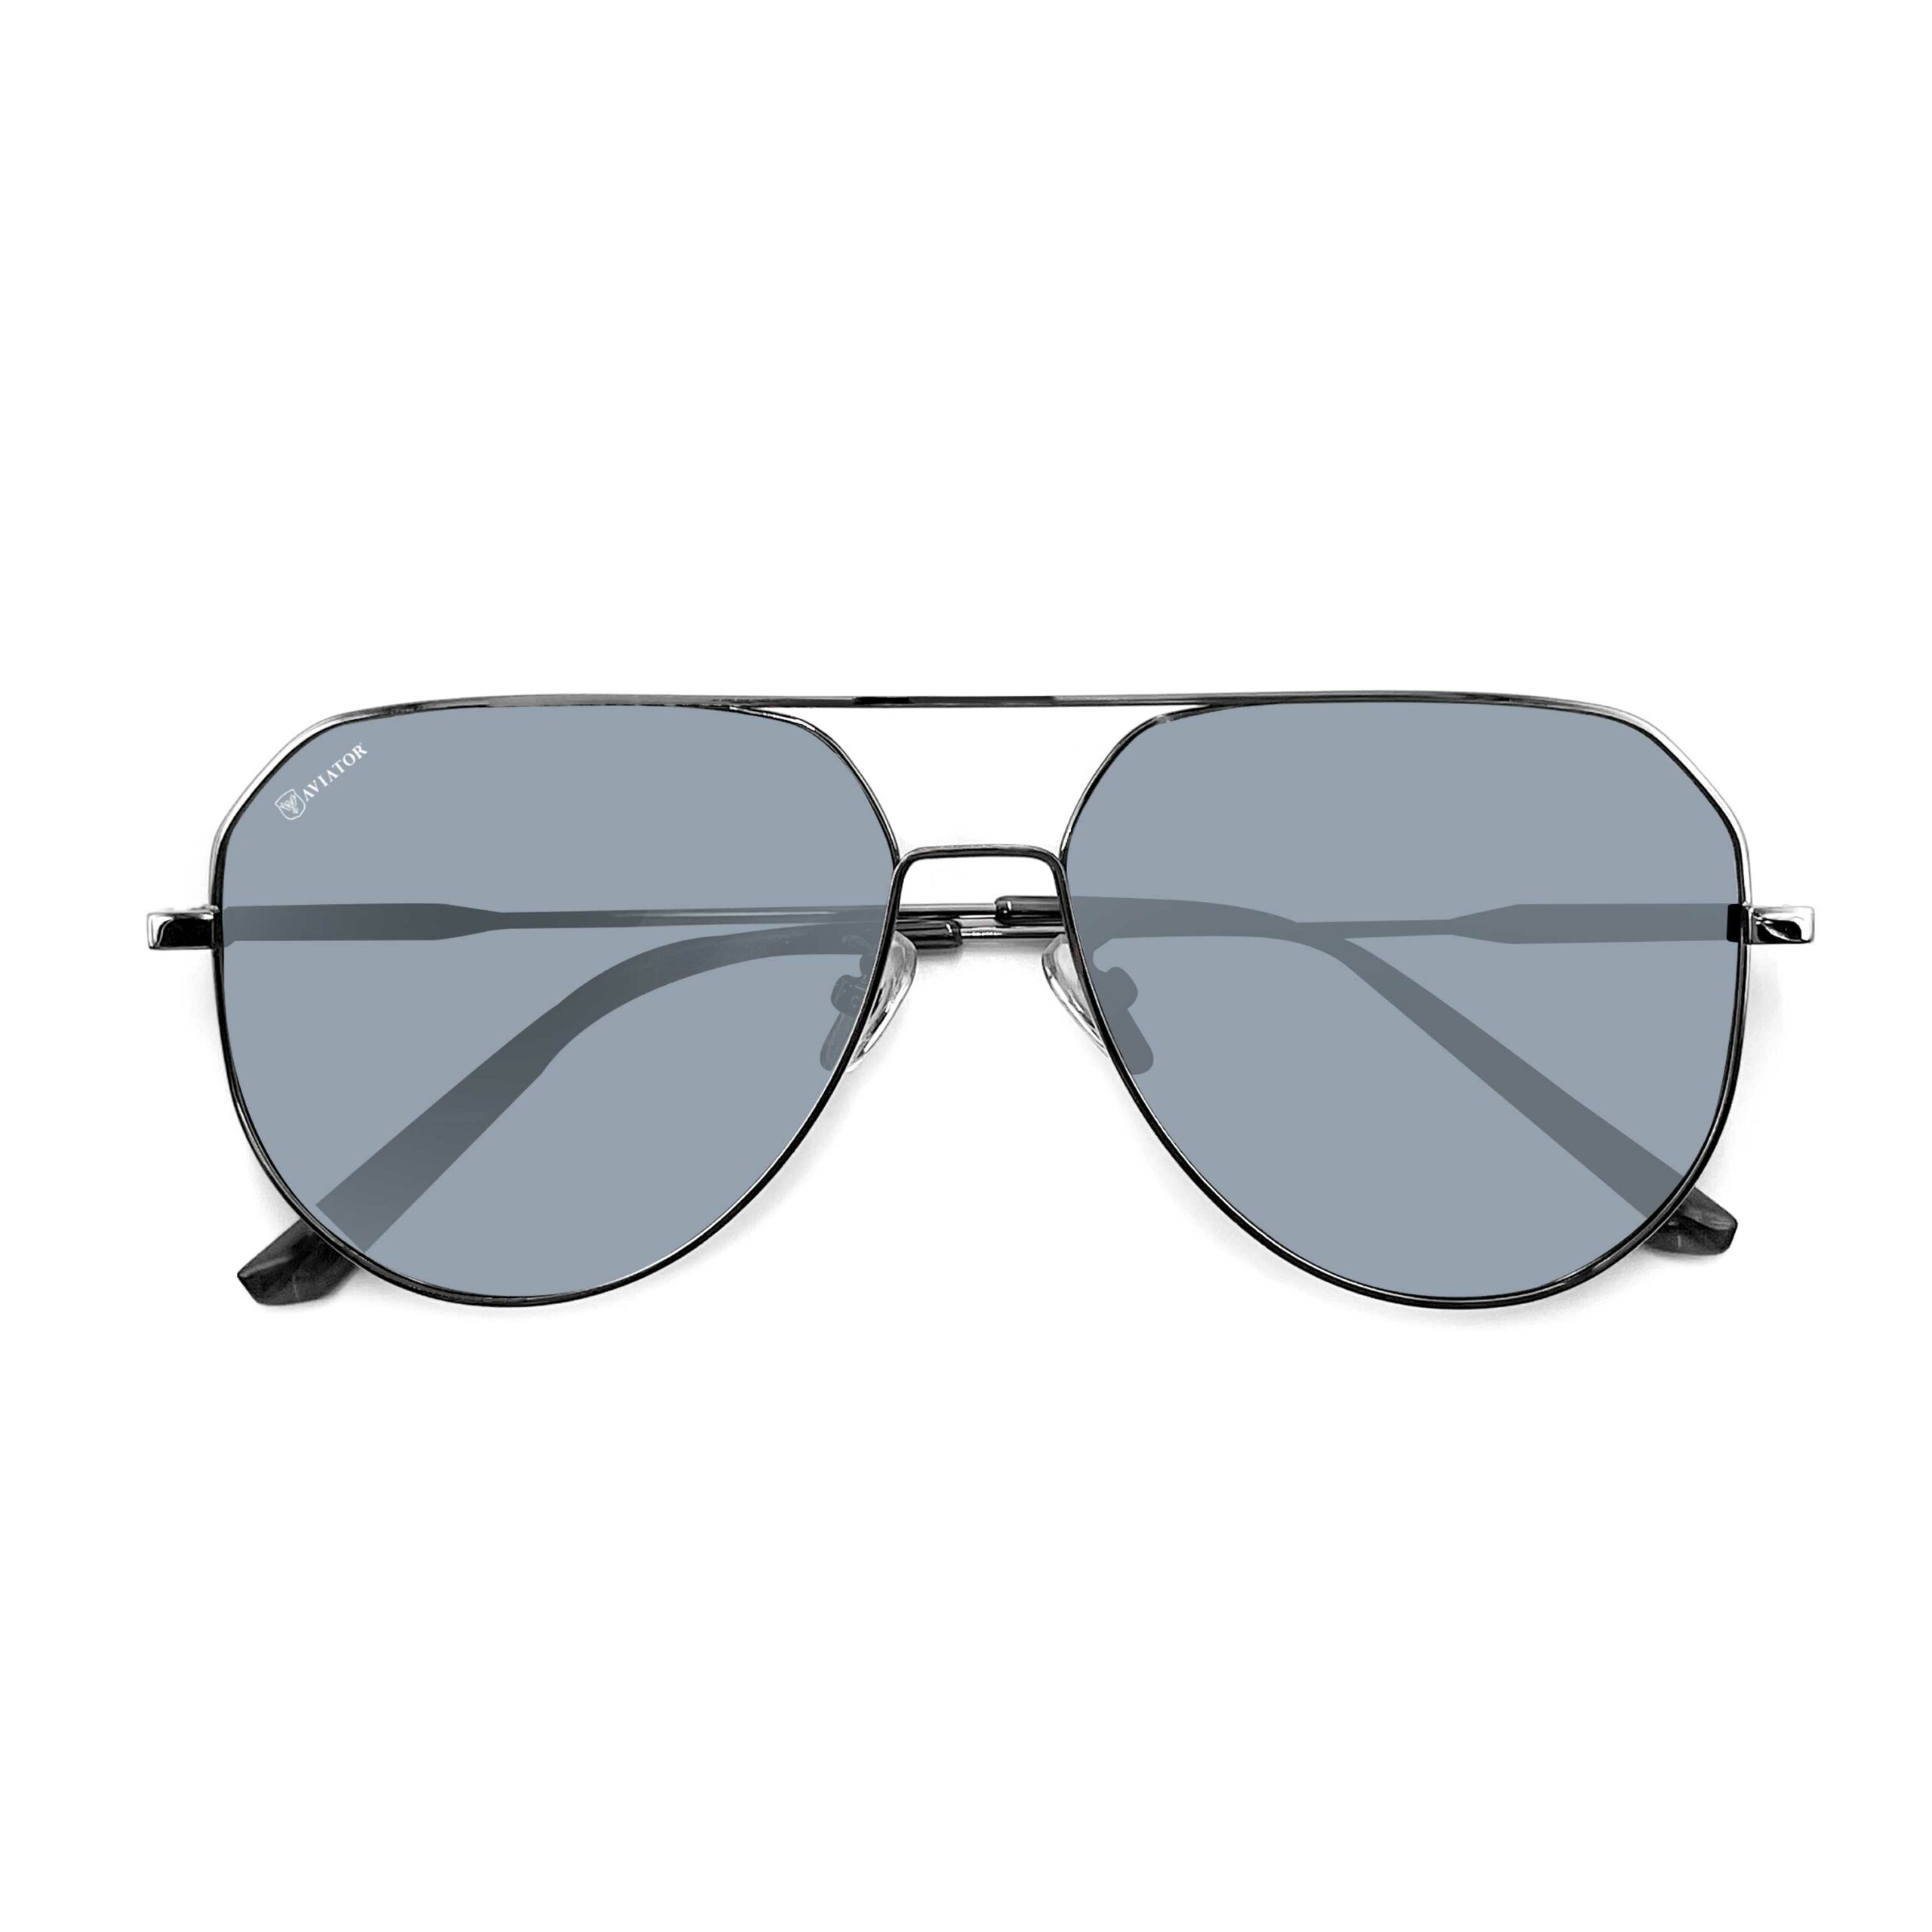 Aviator K398-C2 Sunglasses